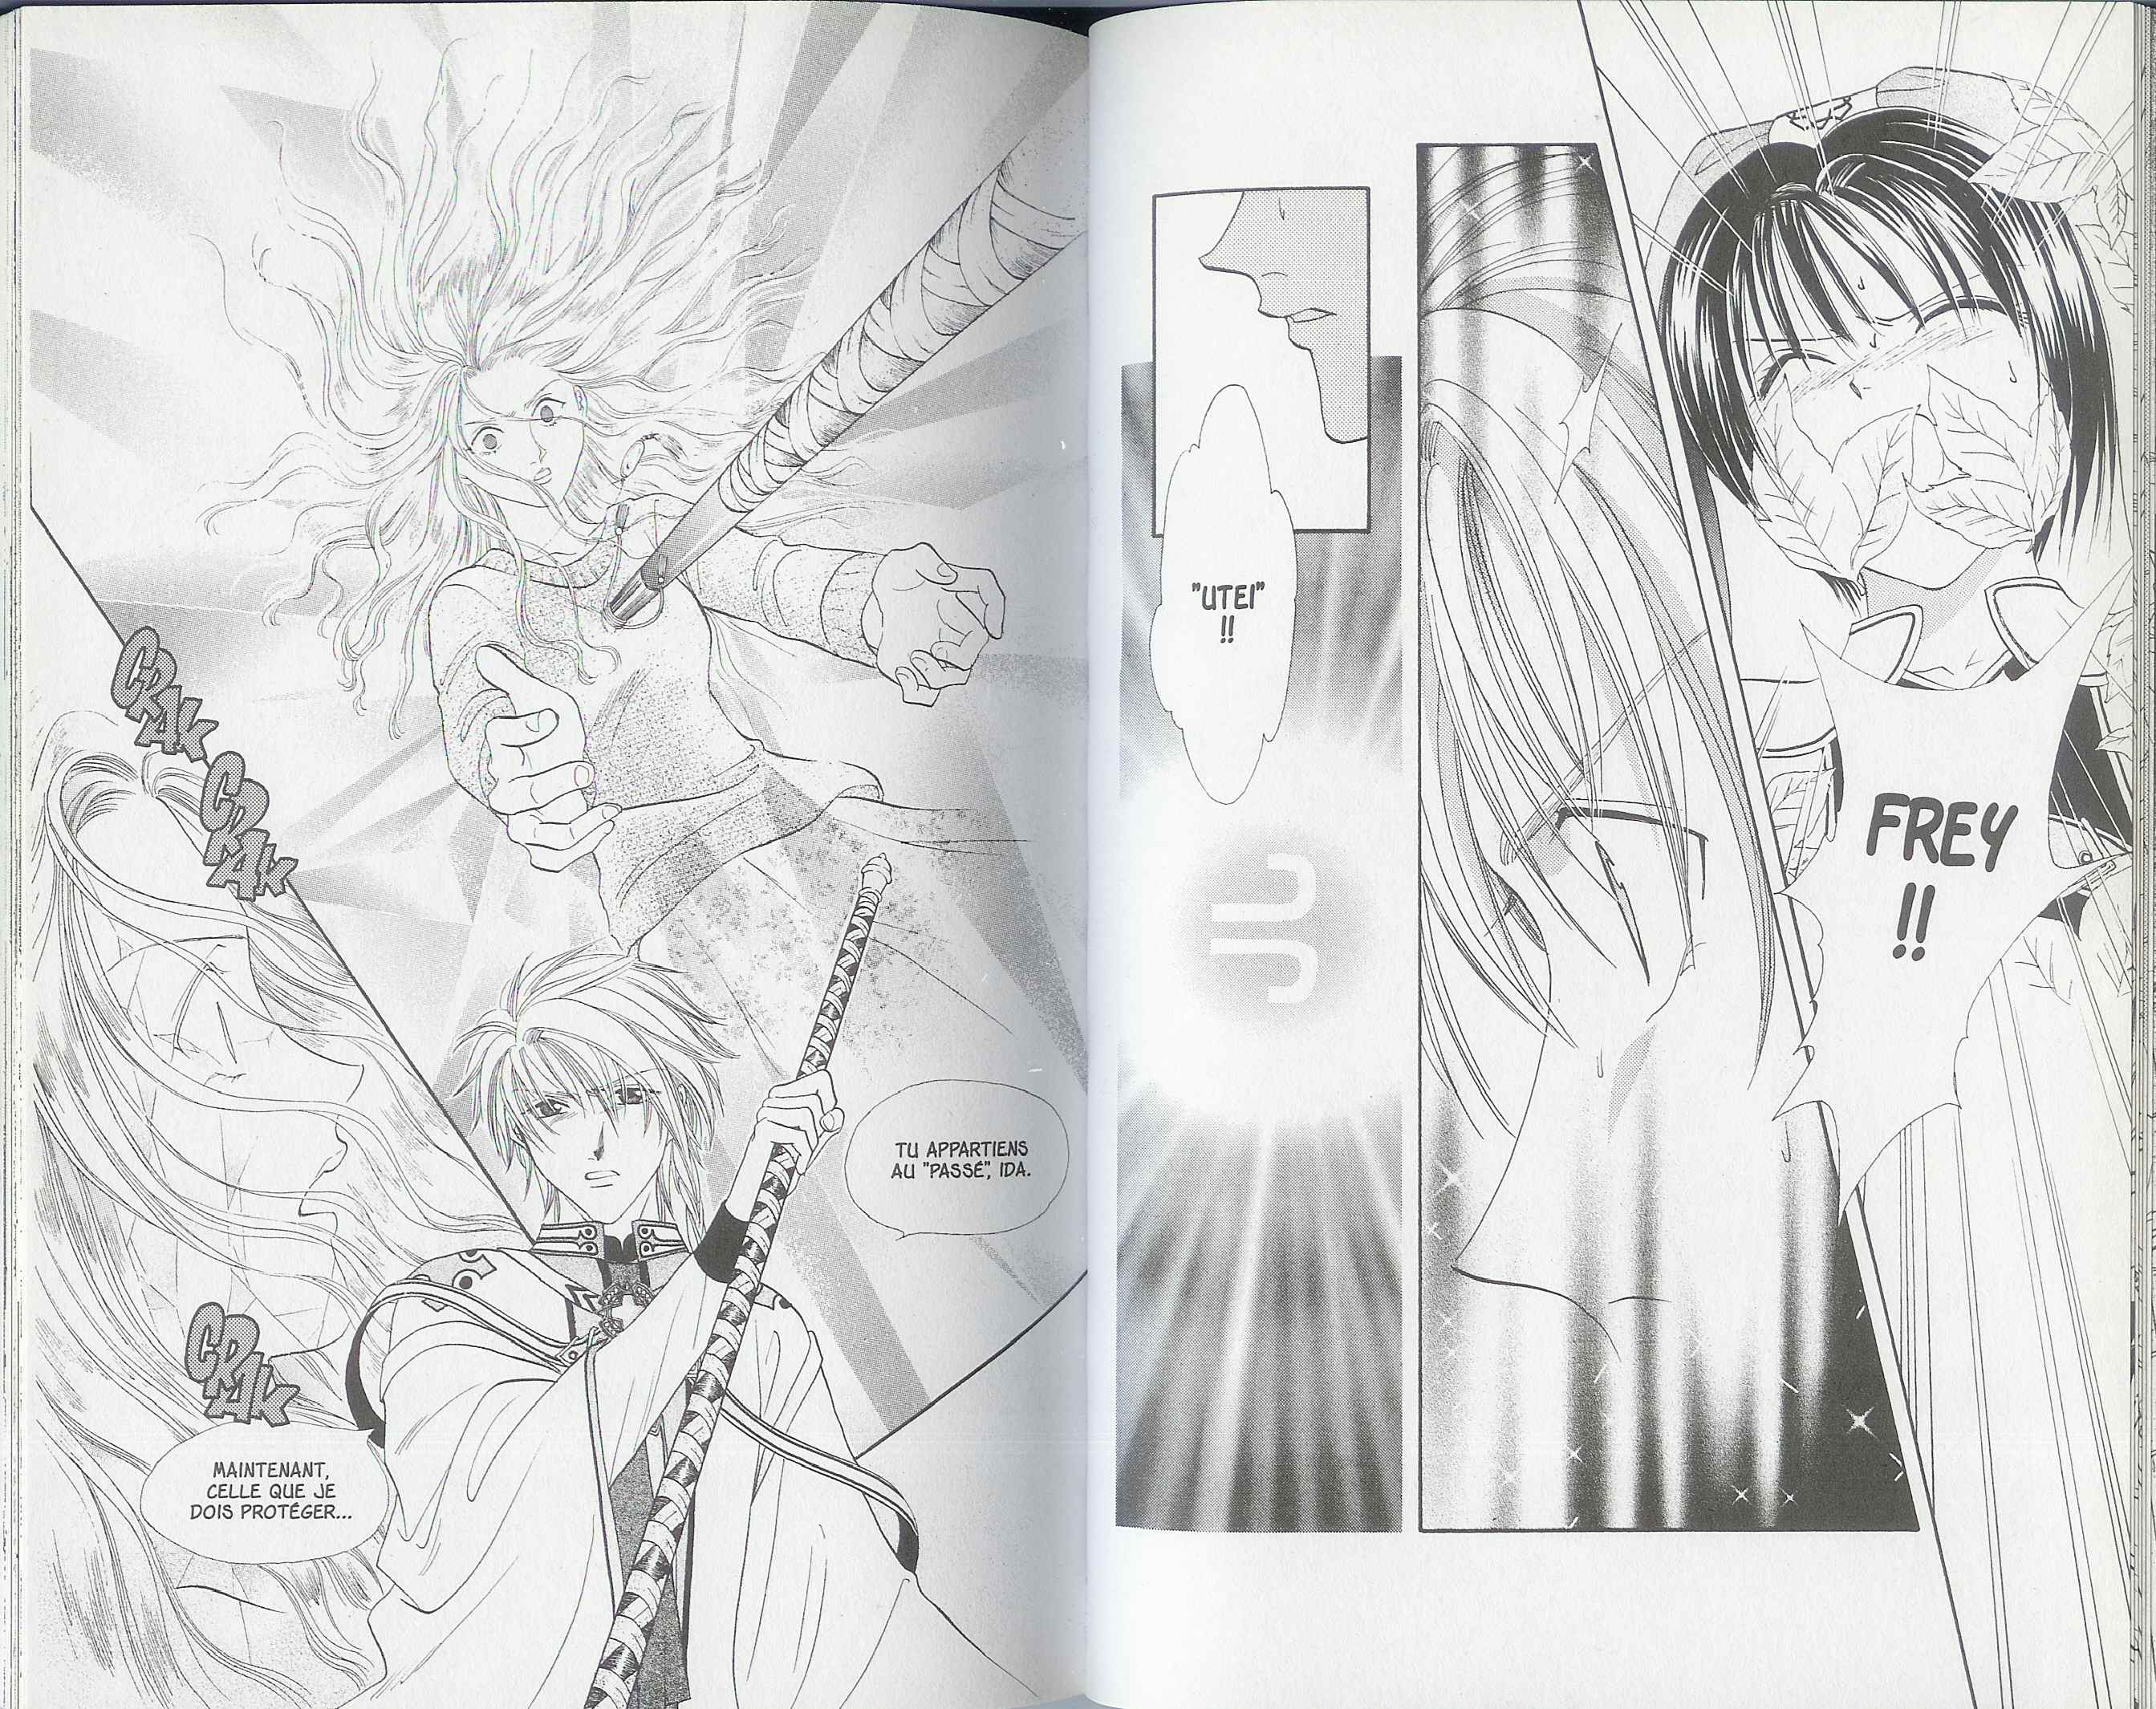 exemples de dessin d’Alice 19th qui est un manga Magical girl